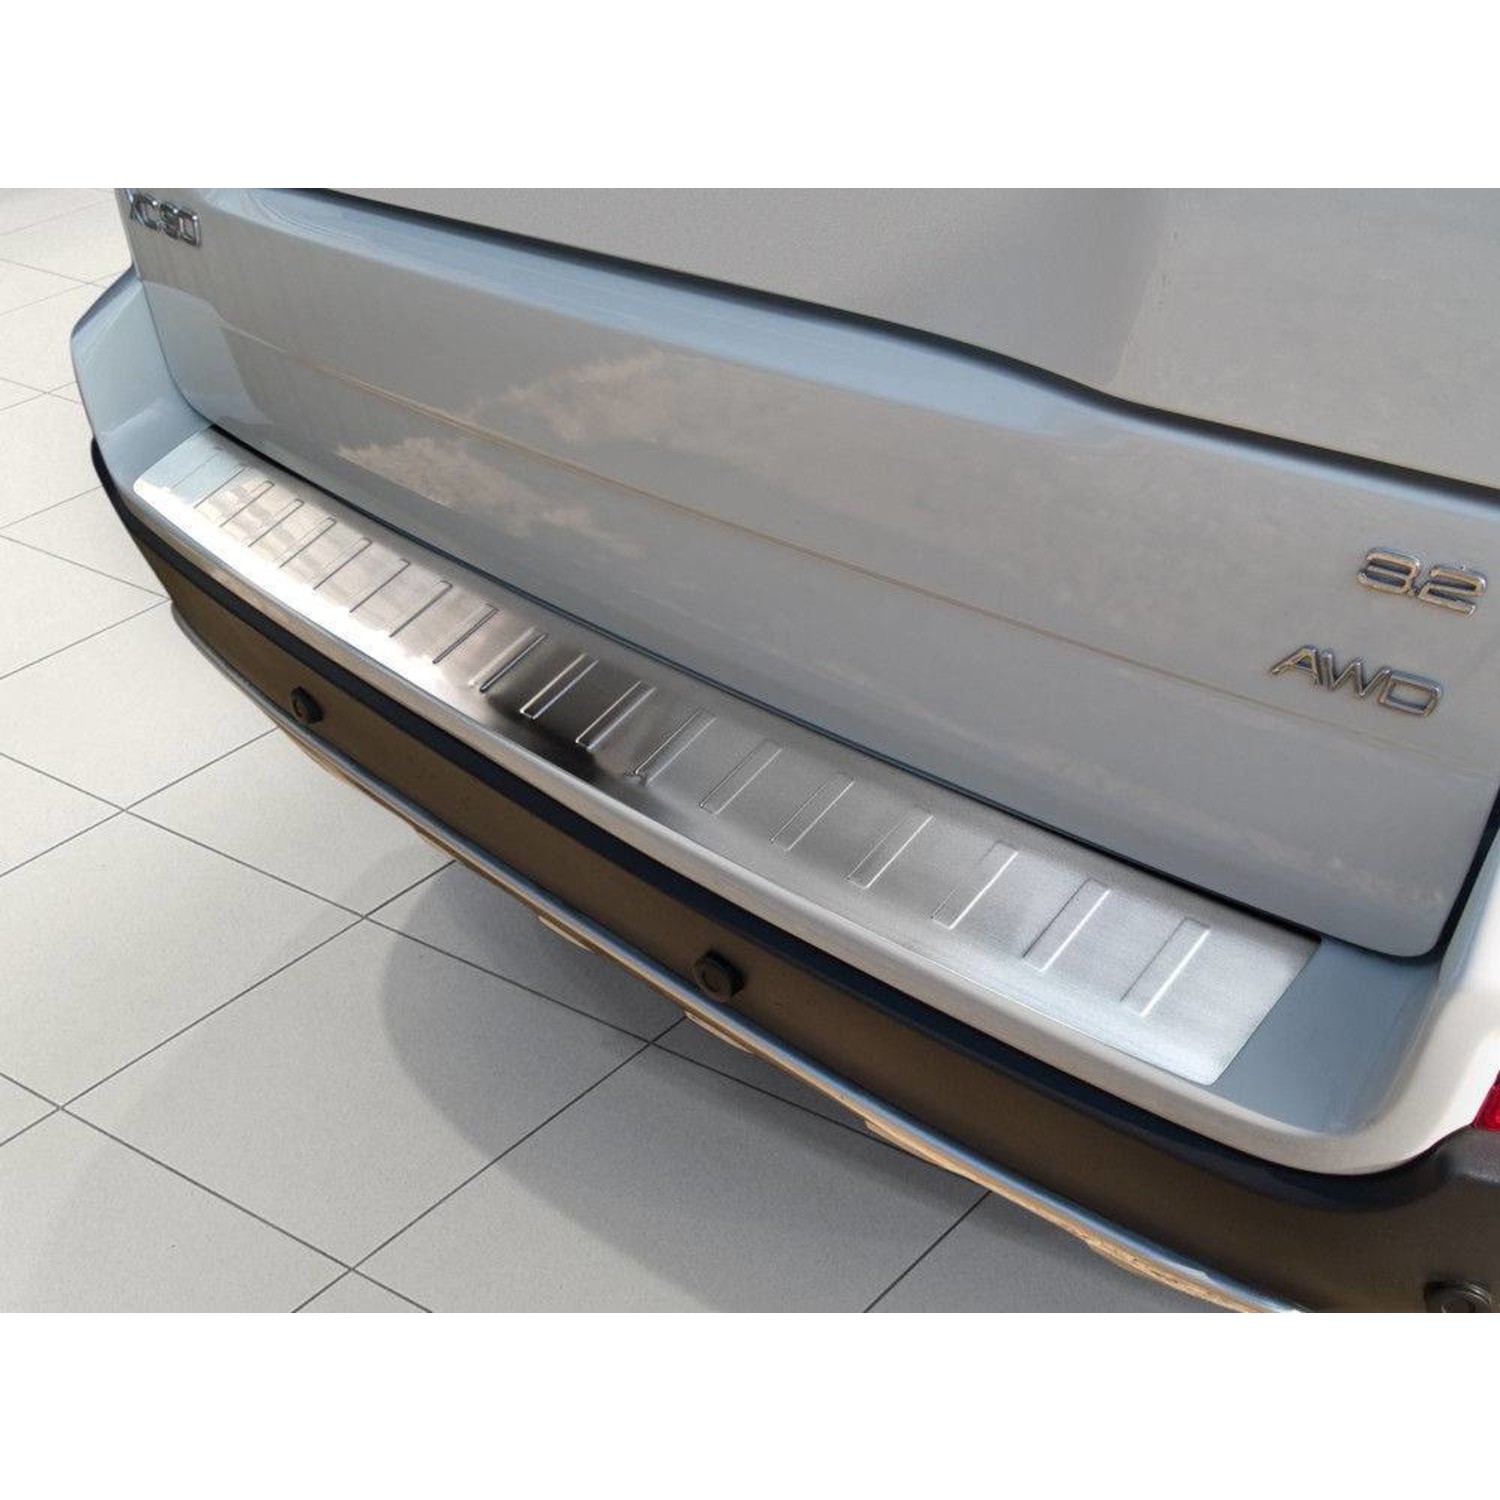 Ladekantenschutz für Volvo XC90 - Maluch Premium Autozubehör